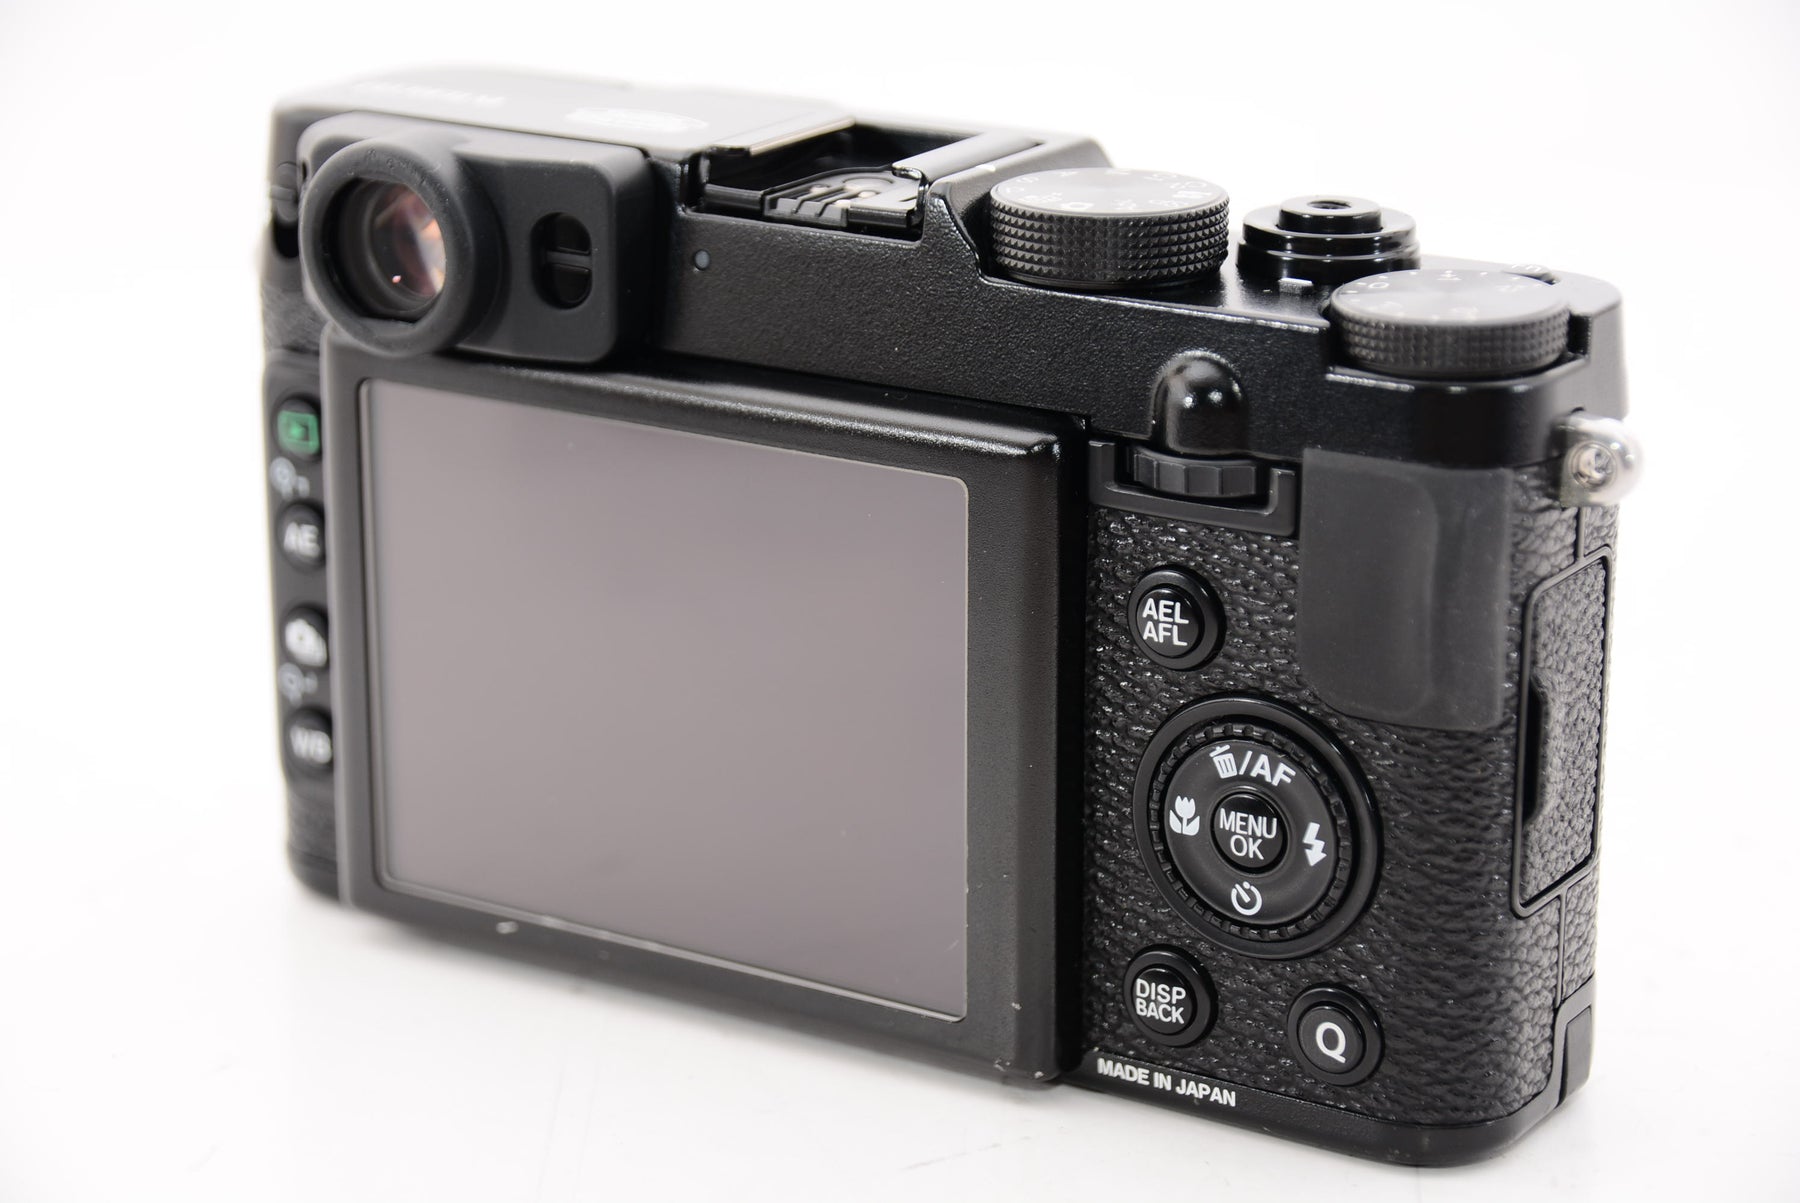 FUJIFILM デジタルカメラ X20B ブラック F FX-X20 B